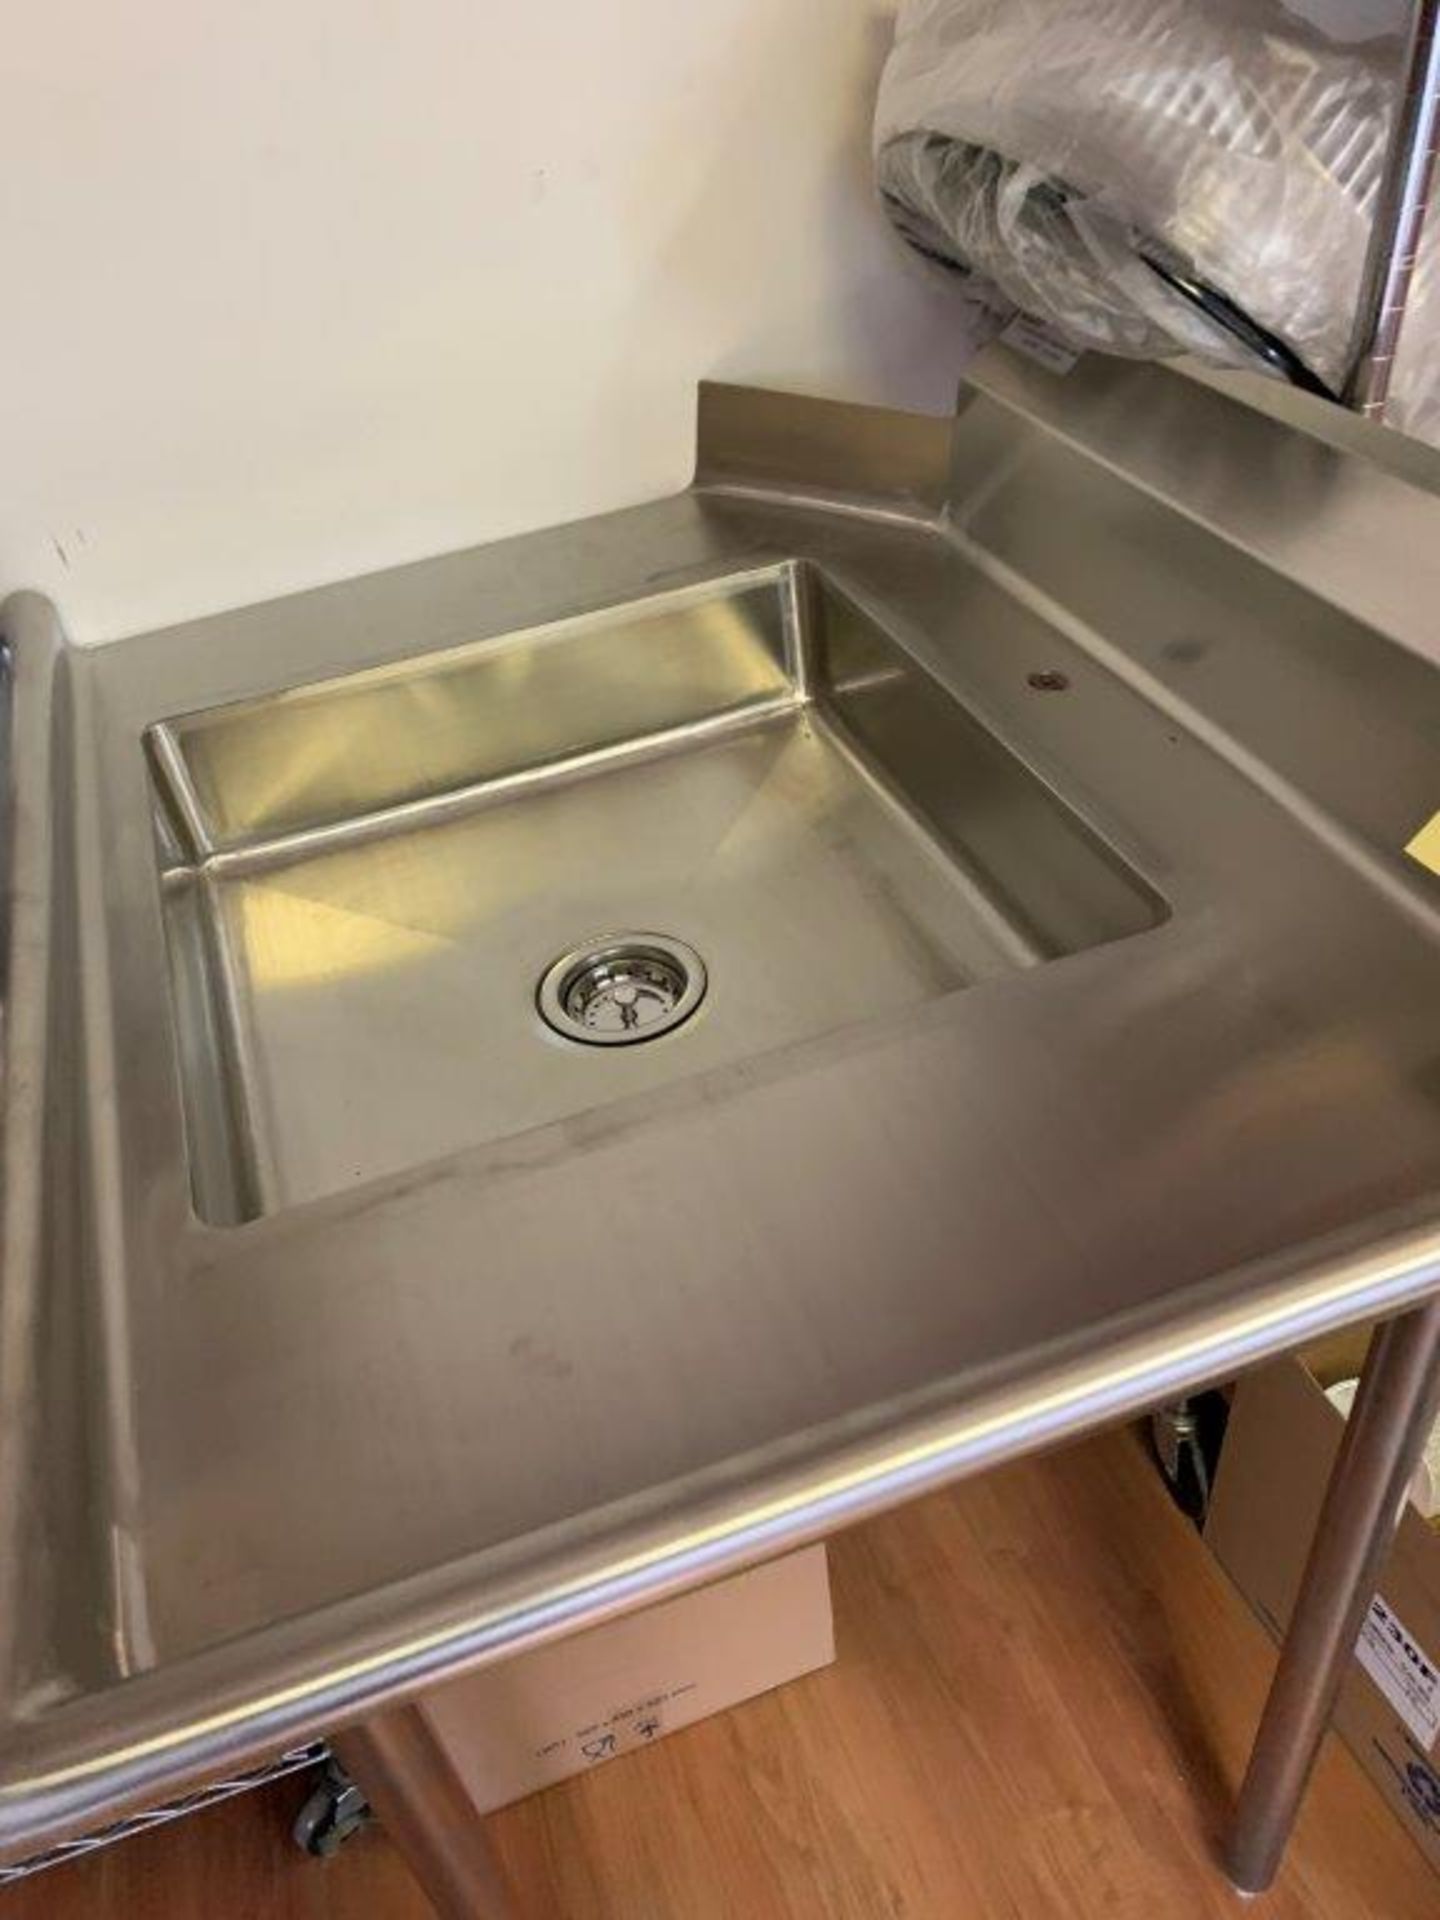 Evier / table pour vaisselle # TLEC 36 x 30 DROITE - Image 2 of 2